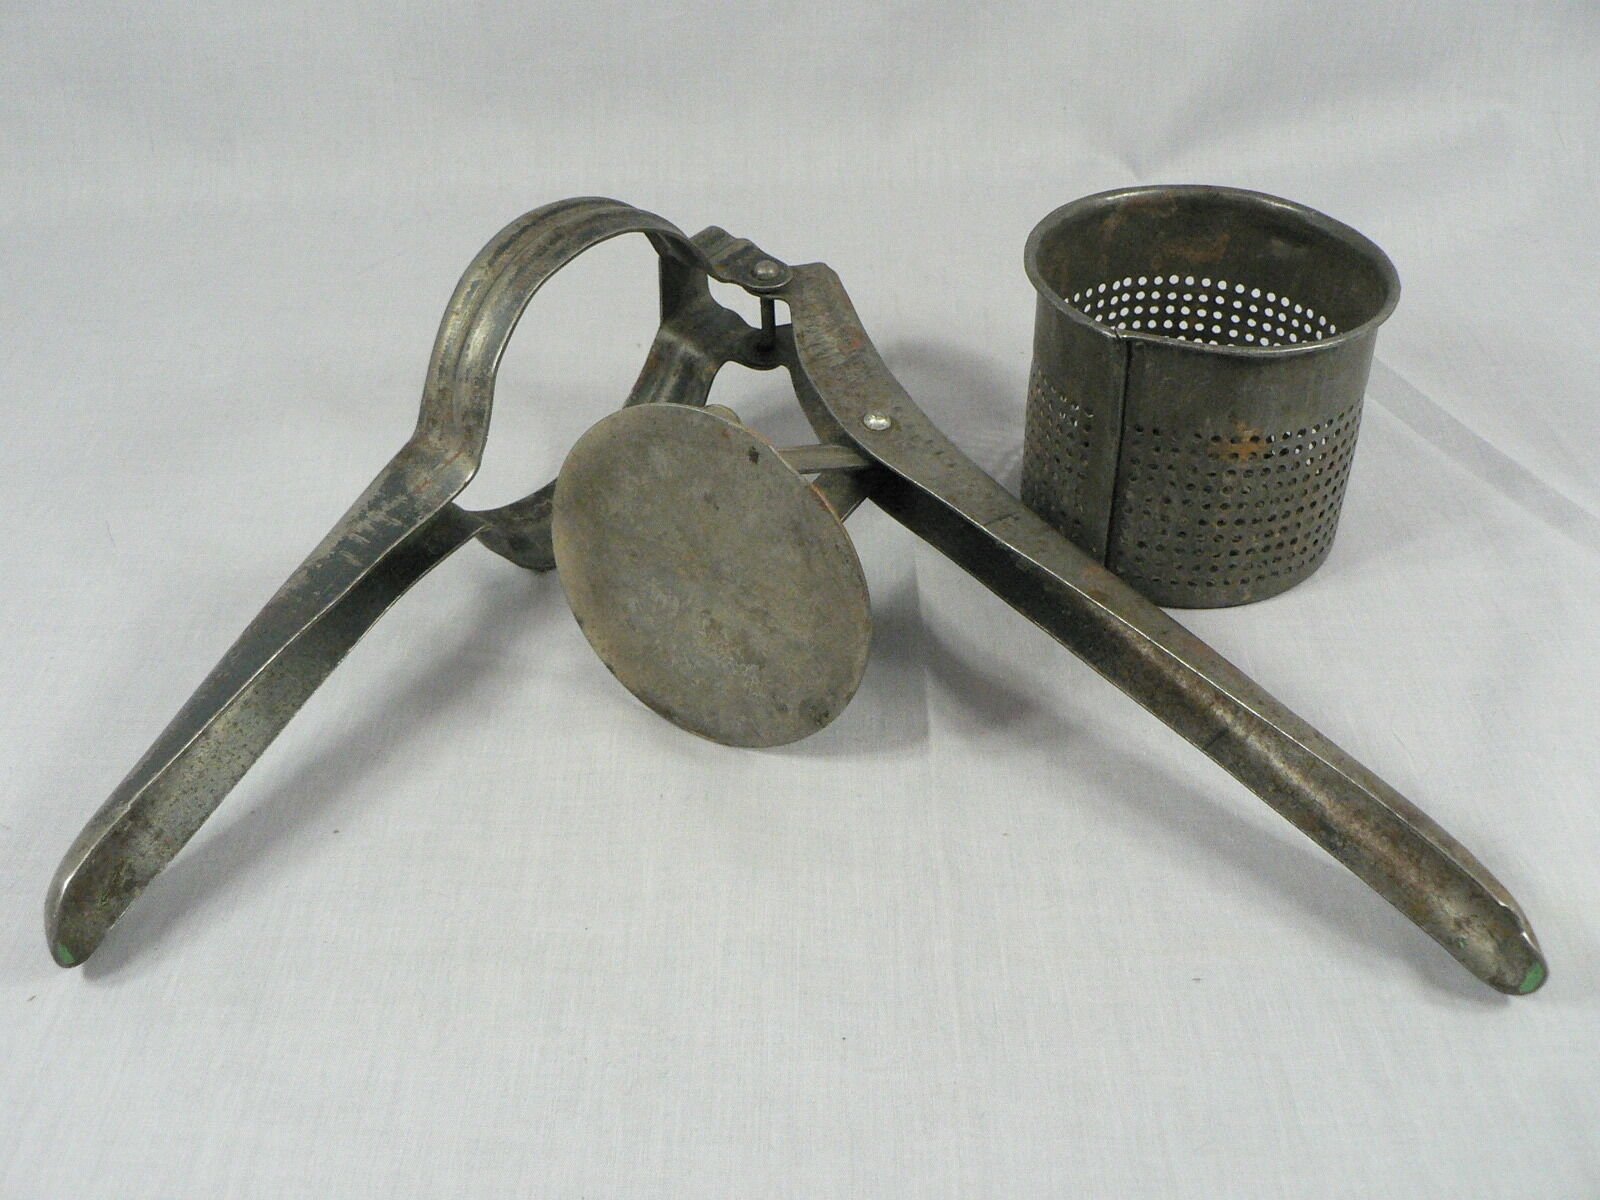 Vintage Primitive Potato Ricer, Juicer, Hand Press Masher, metal